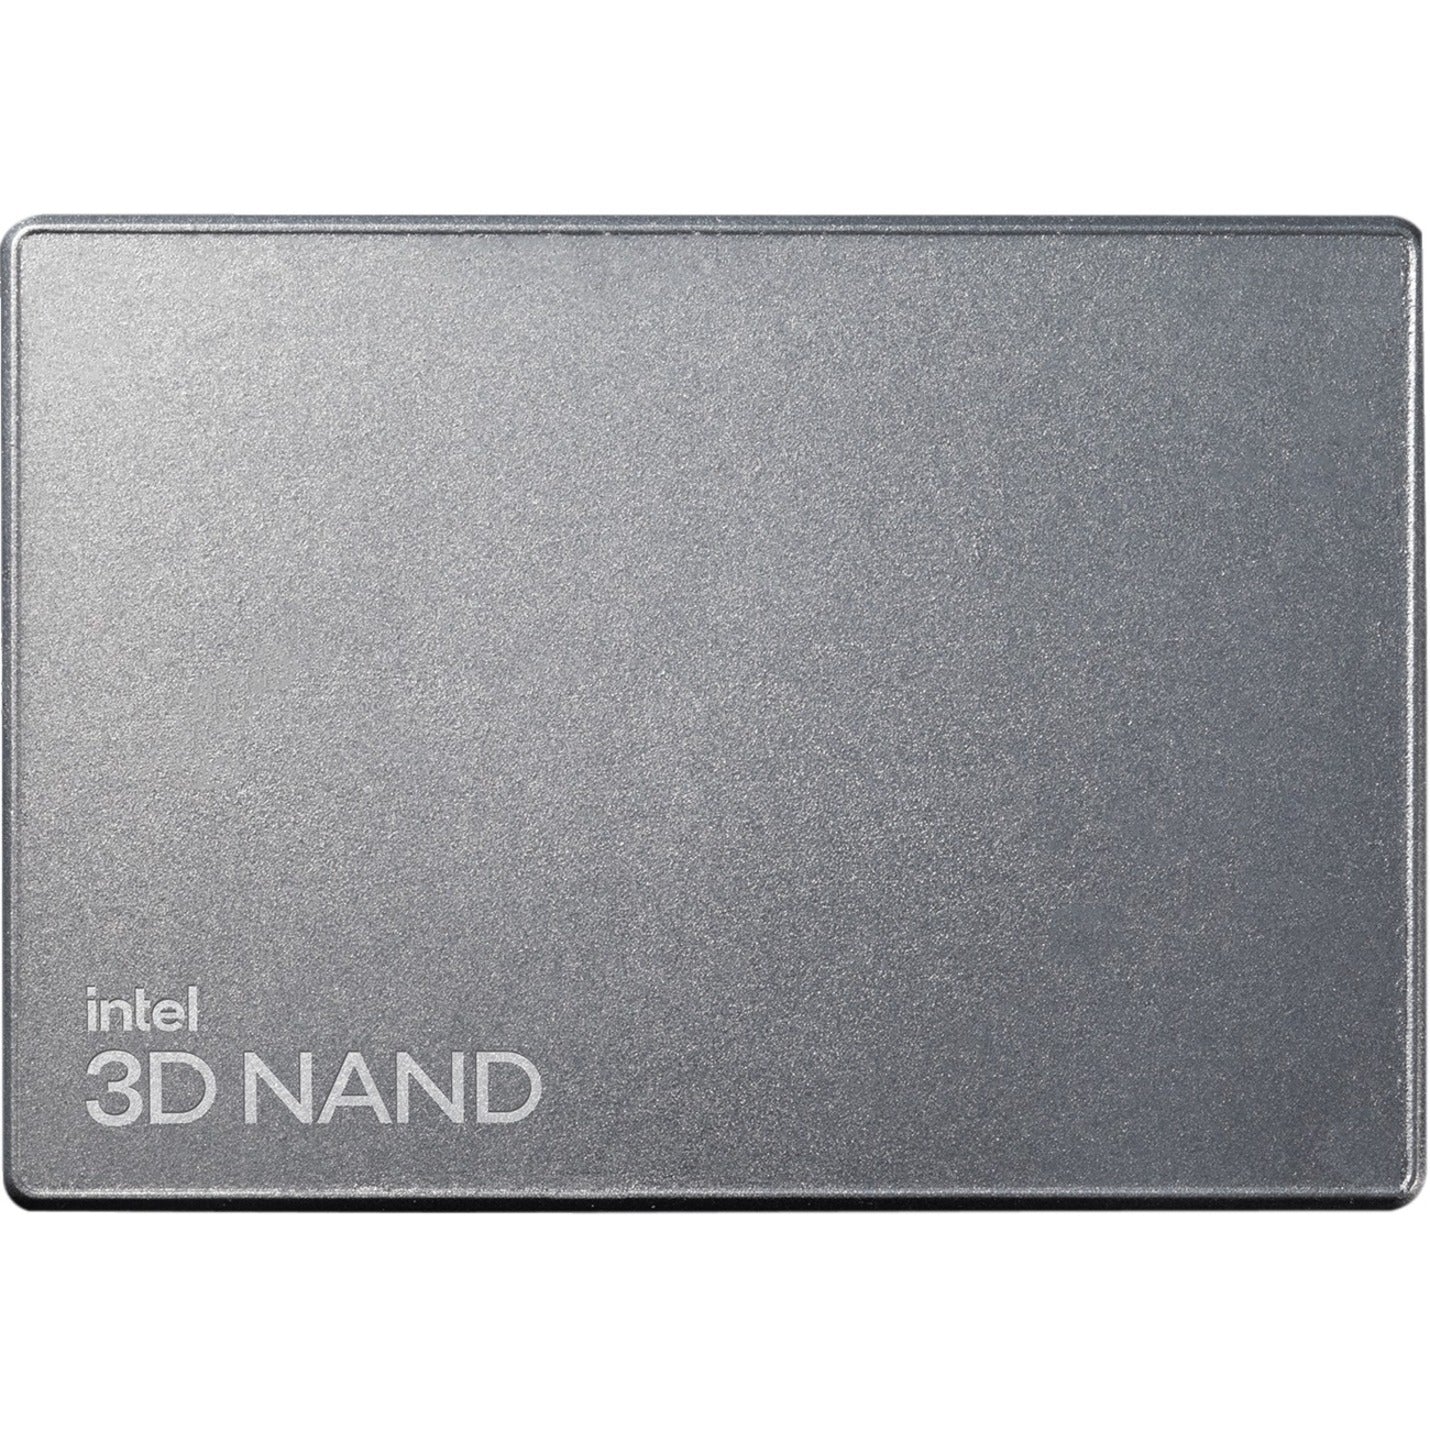 Intel SSD D7-P5510 SSDPF2KX076TZ01 7.68TB PCIe 4.0 x4 2.5inch, High Performance Solid State Drive